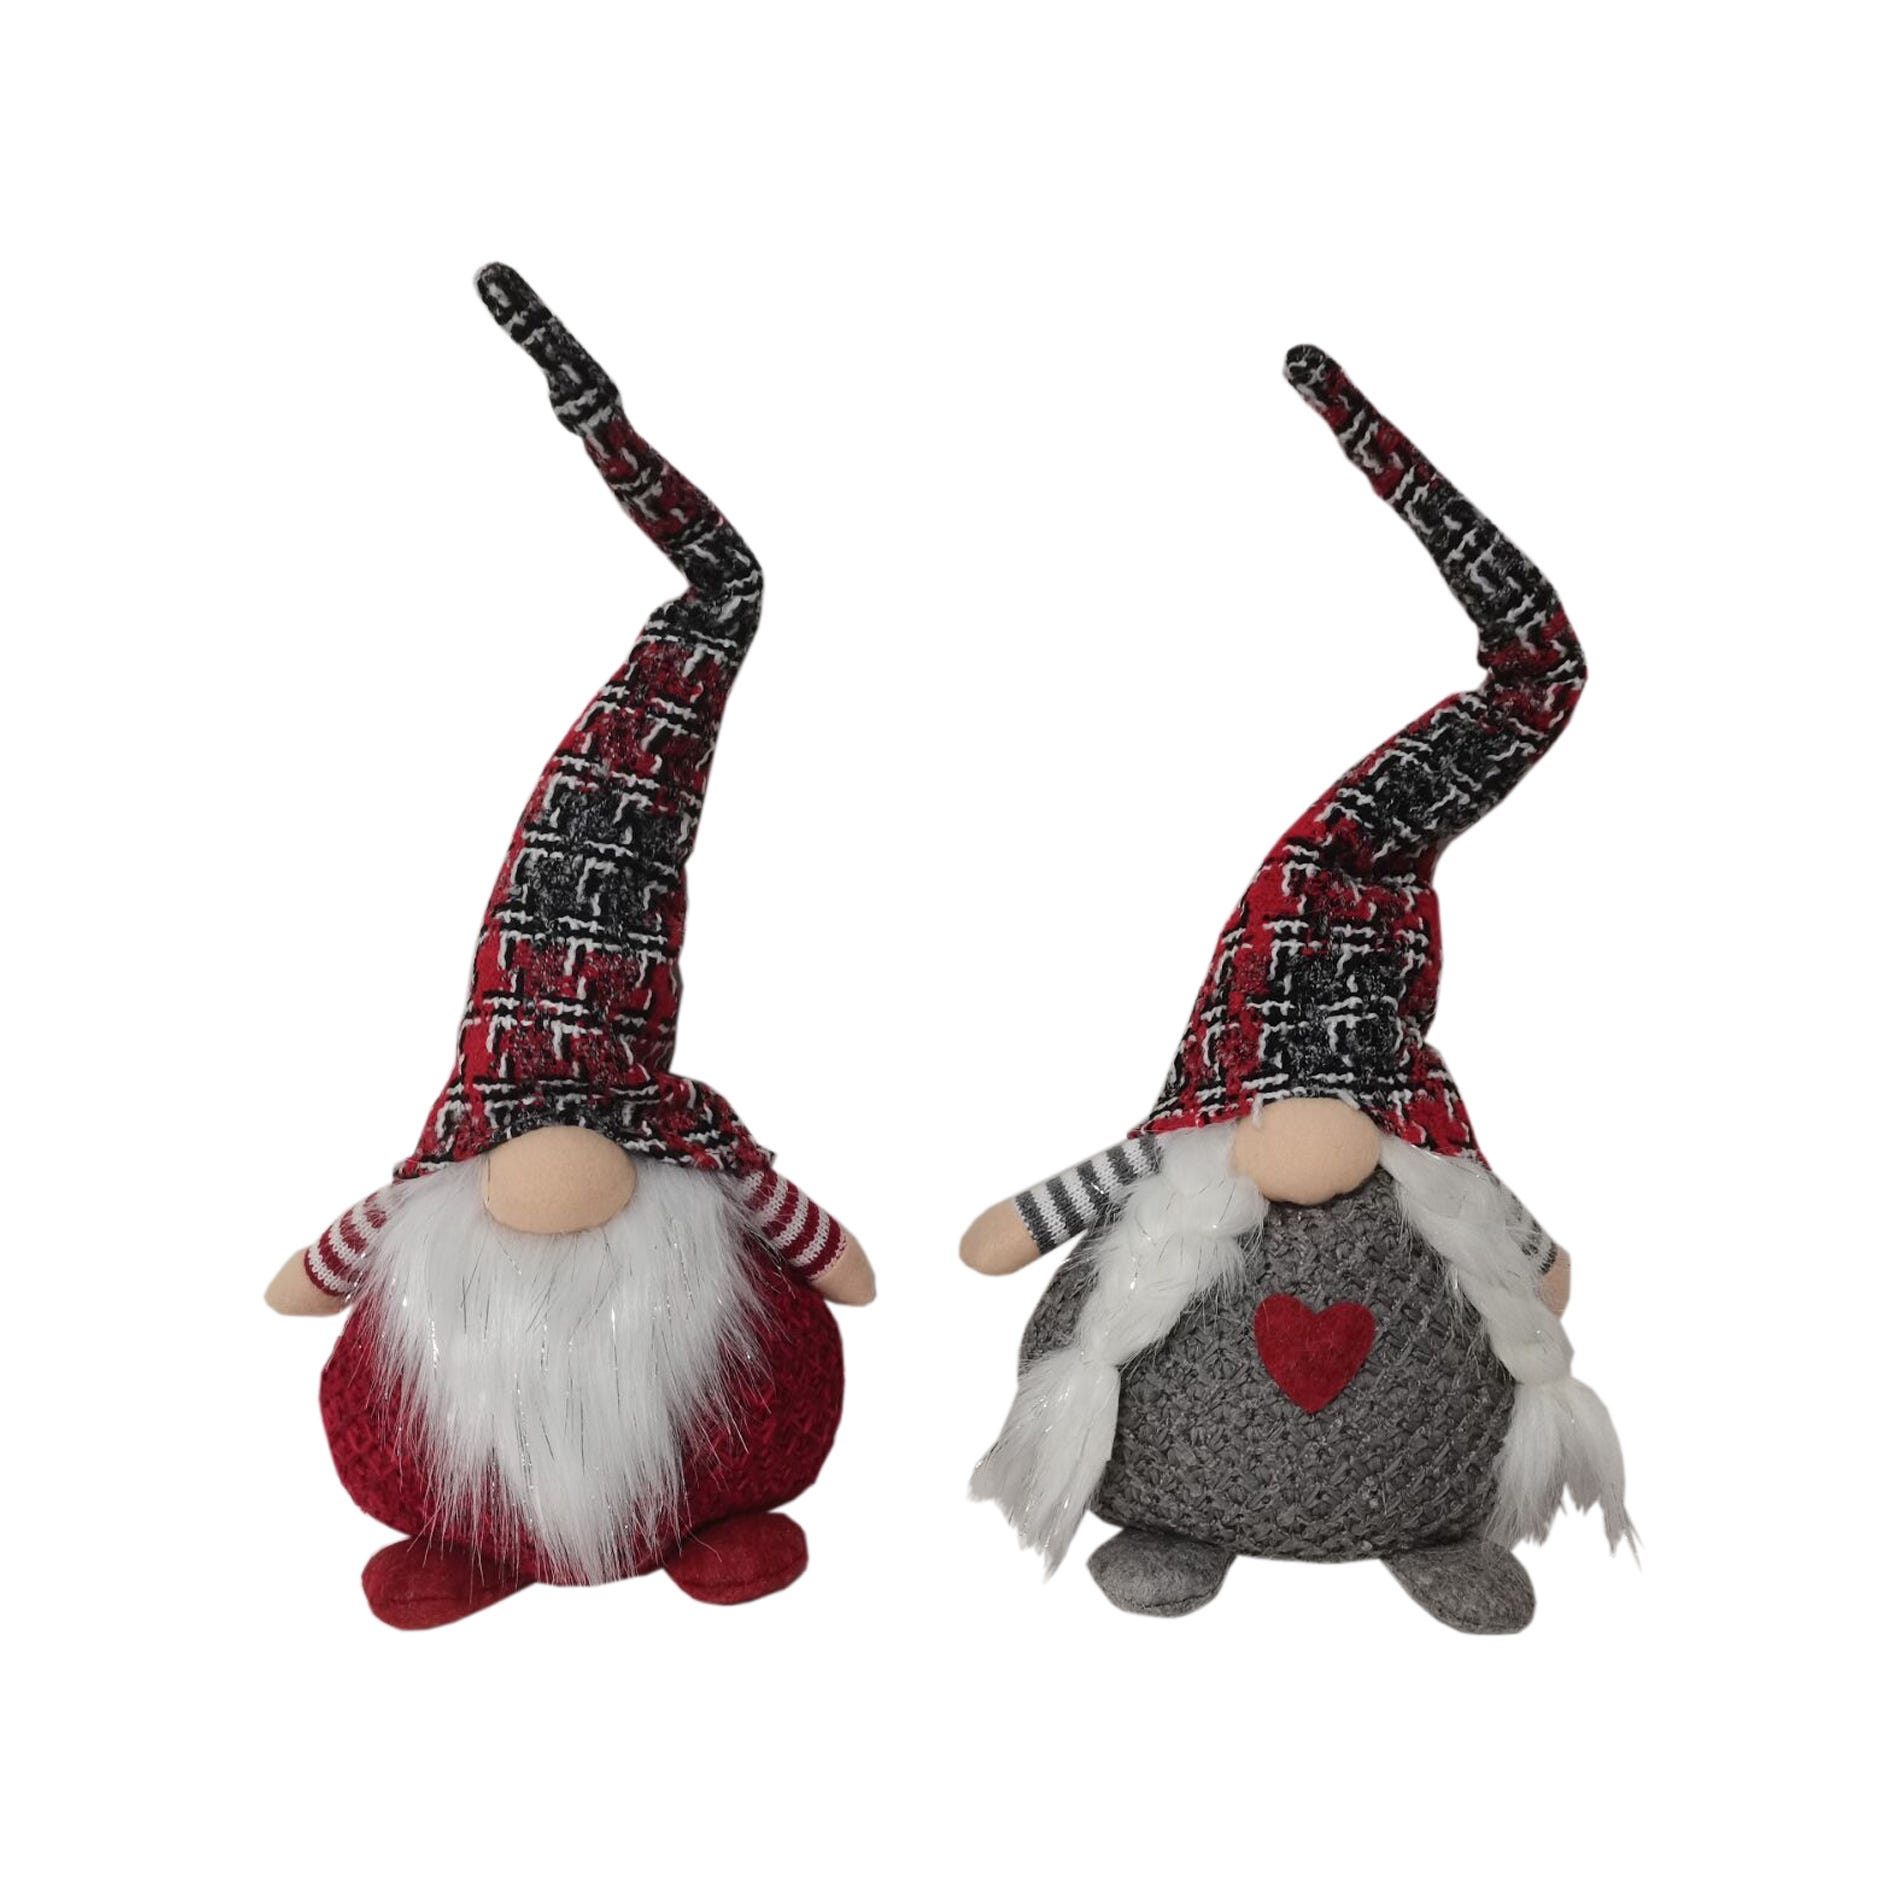 Collection D'étiquettes De Noël Avec Des Gnomes